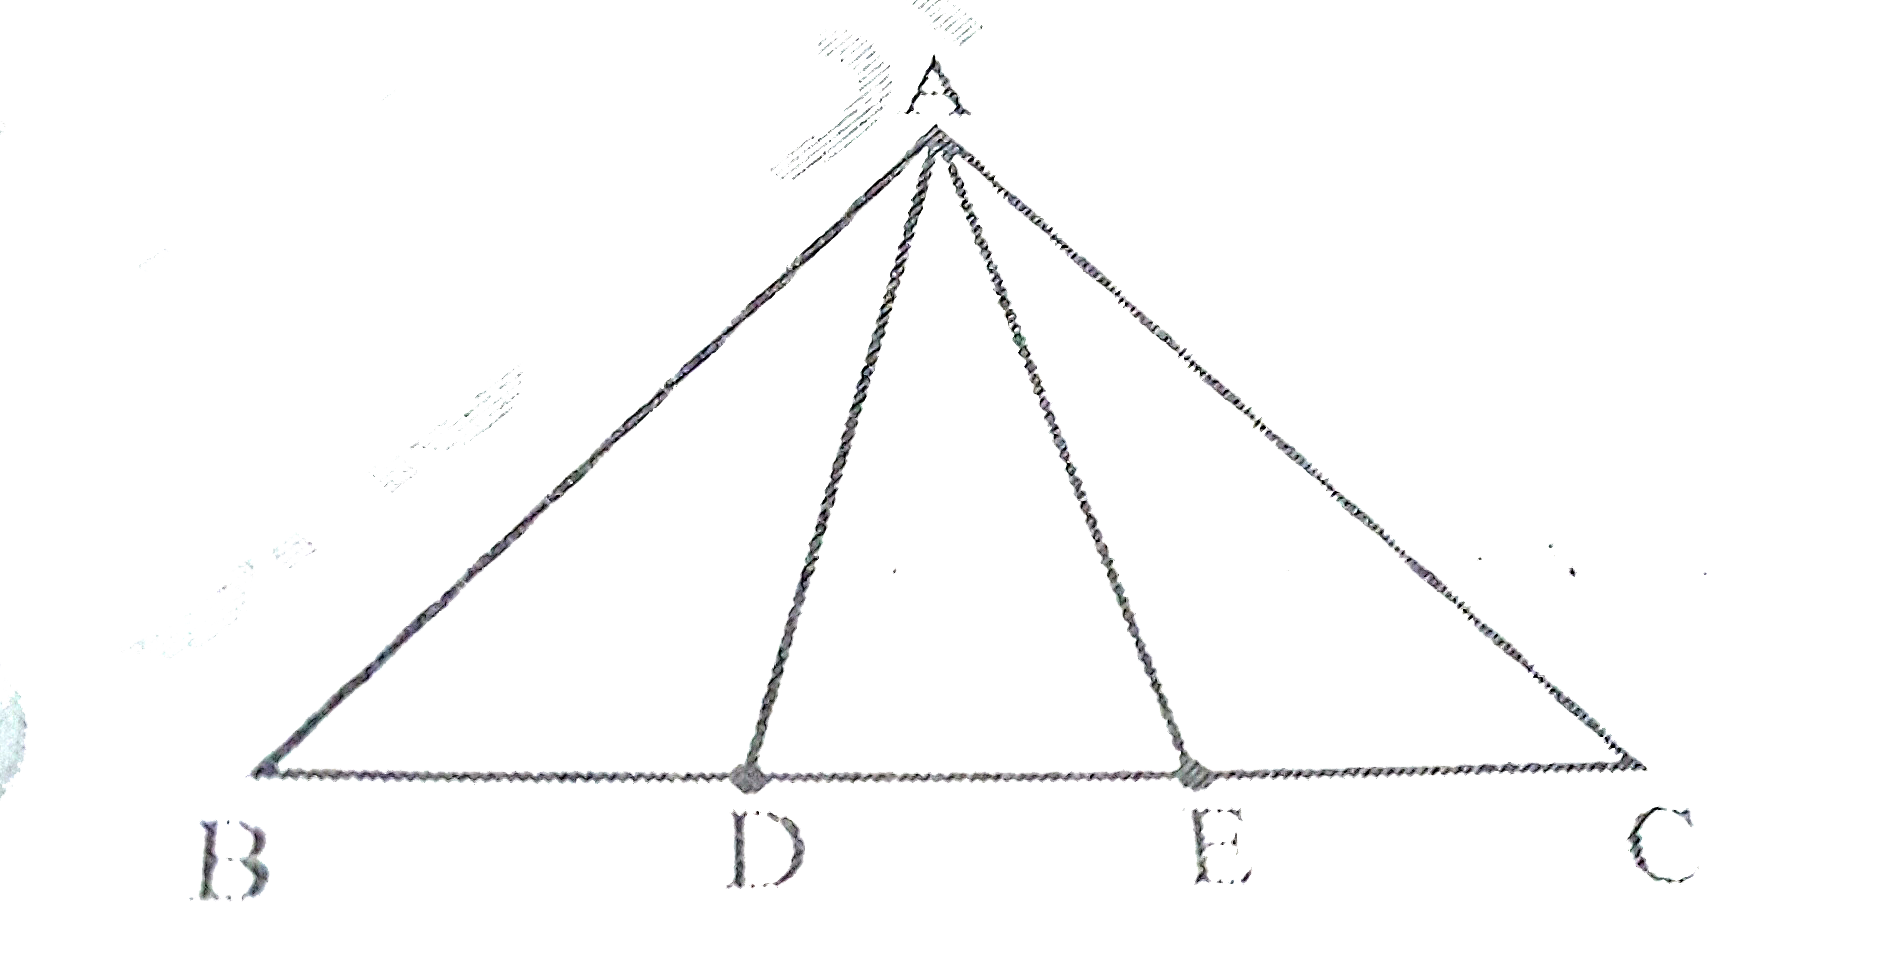 आकृति  में, भुजा  BC पर दो बिंदु  D और  E  इस  प्रकार  स्थित  है कि BD = DE =EC  है।   दर्शाइए  कि  ar(ABD)=ar(ADE)=ar(AEC)  है ।    क्या  आप  अब प्रश्न  का उत्तर दे  सकते  है, जो  आपने  इस  अध्याय  की भूमिका में  छोड़  दिया  था  कि  क्या  बुधिया का खेत  वास्तव  में  बराबर  क्षेत्रफलों वाले  तीन  भागो  में विभाजित  हो गया  है?